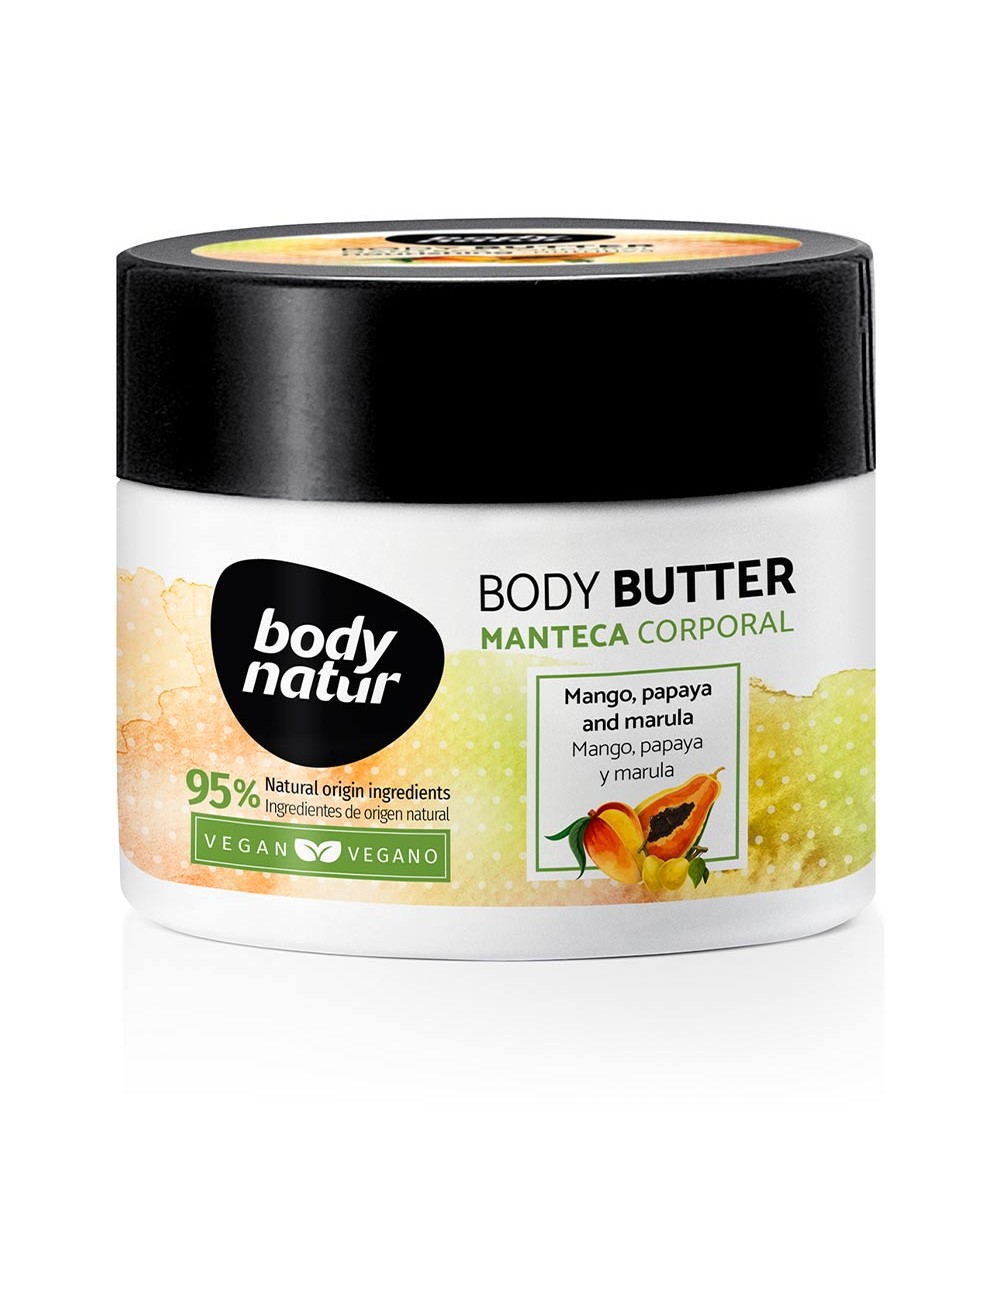 BODY butter manteca corporal mango, papaya y marula 200 ml